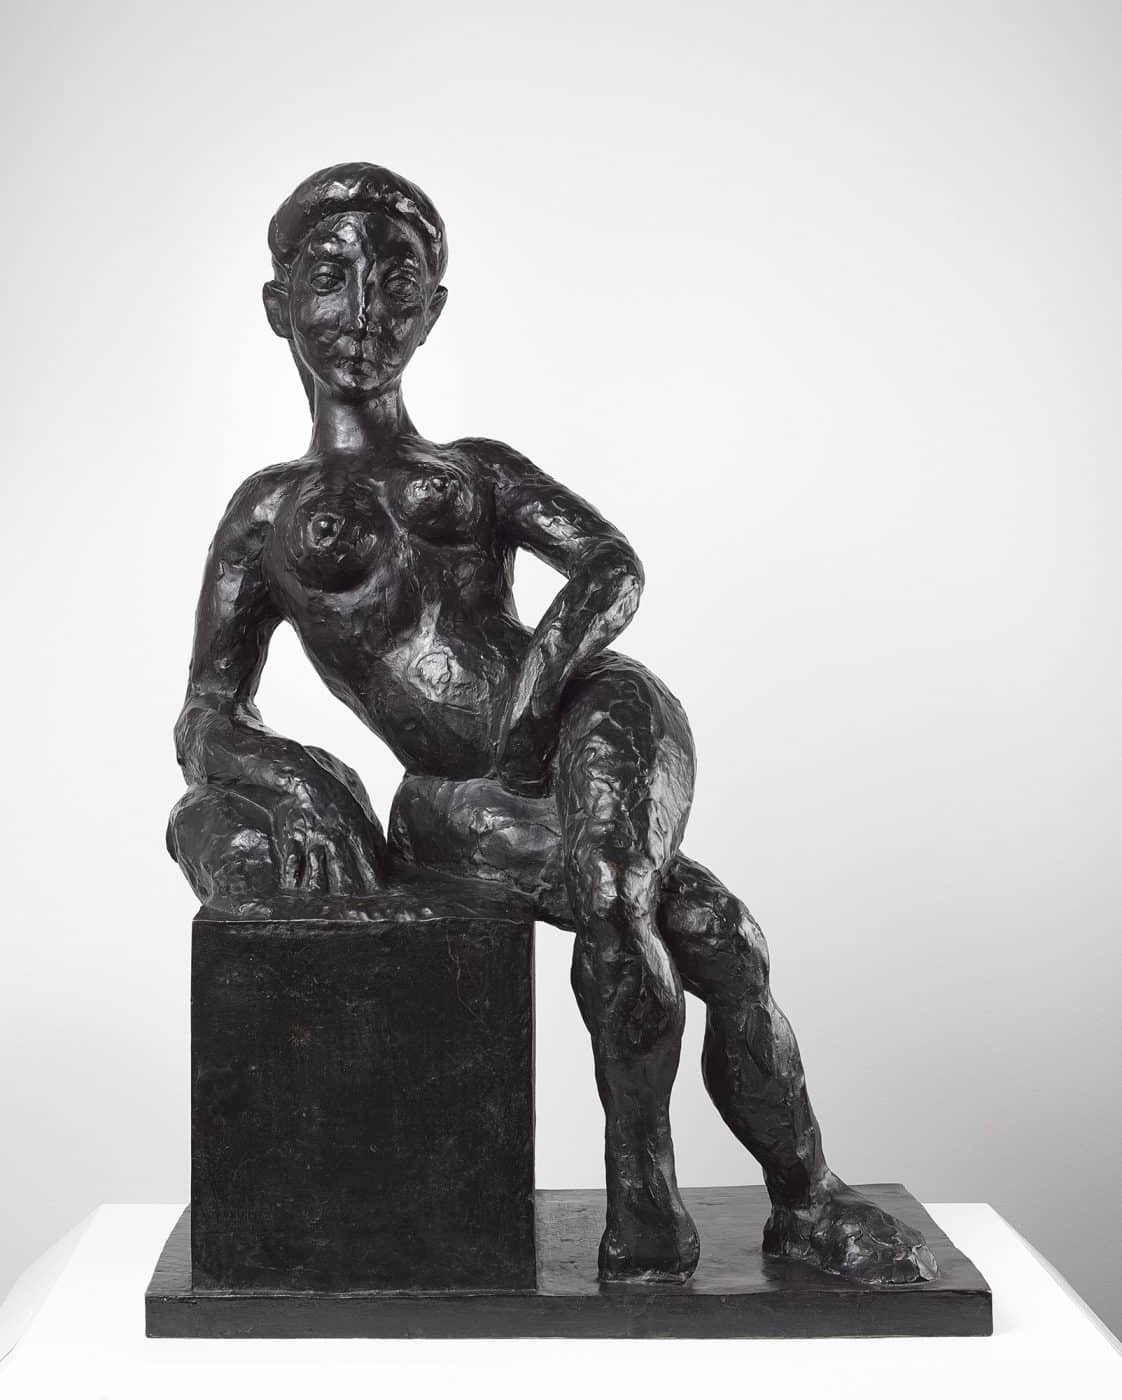 Decorative Figure, 1908, a bronze sculpture by Henri Matisse